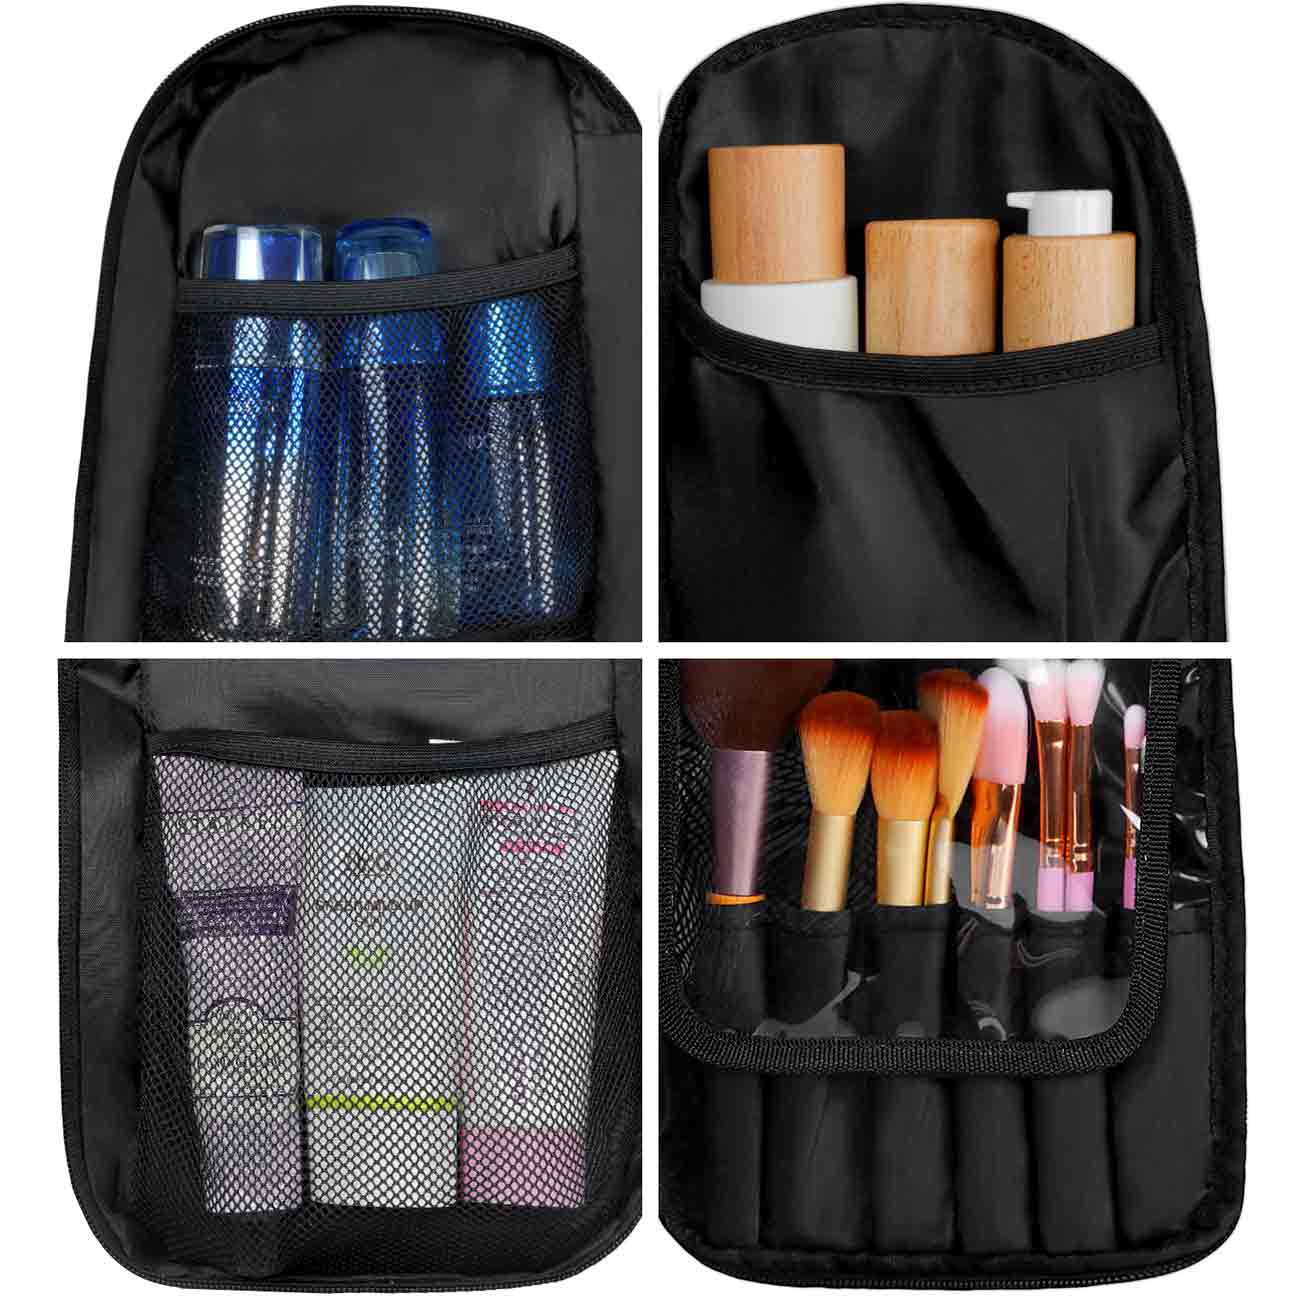 Matein Professional Makeup Backpack-makeup bag